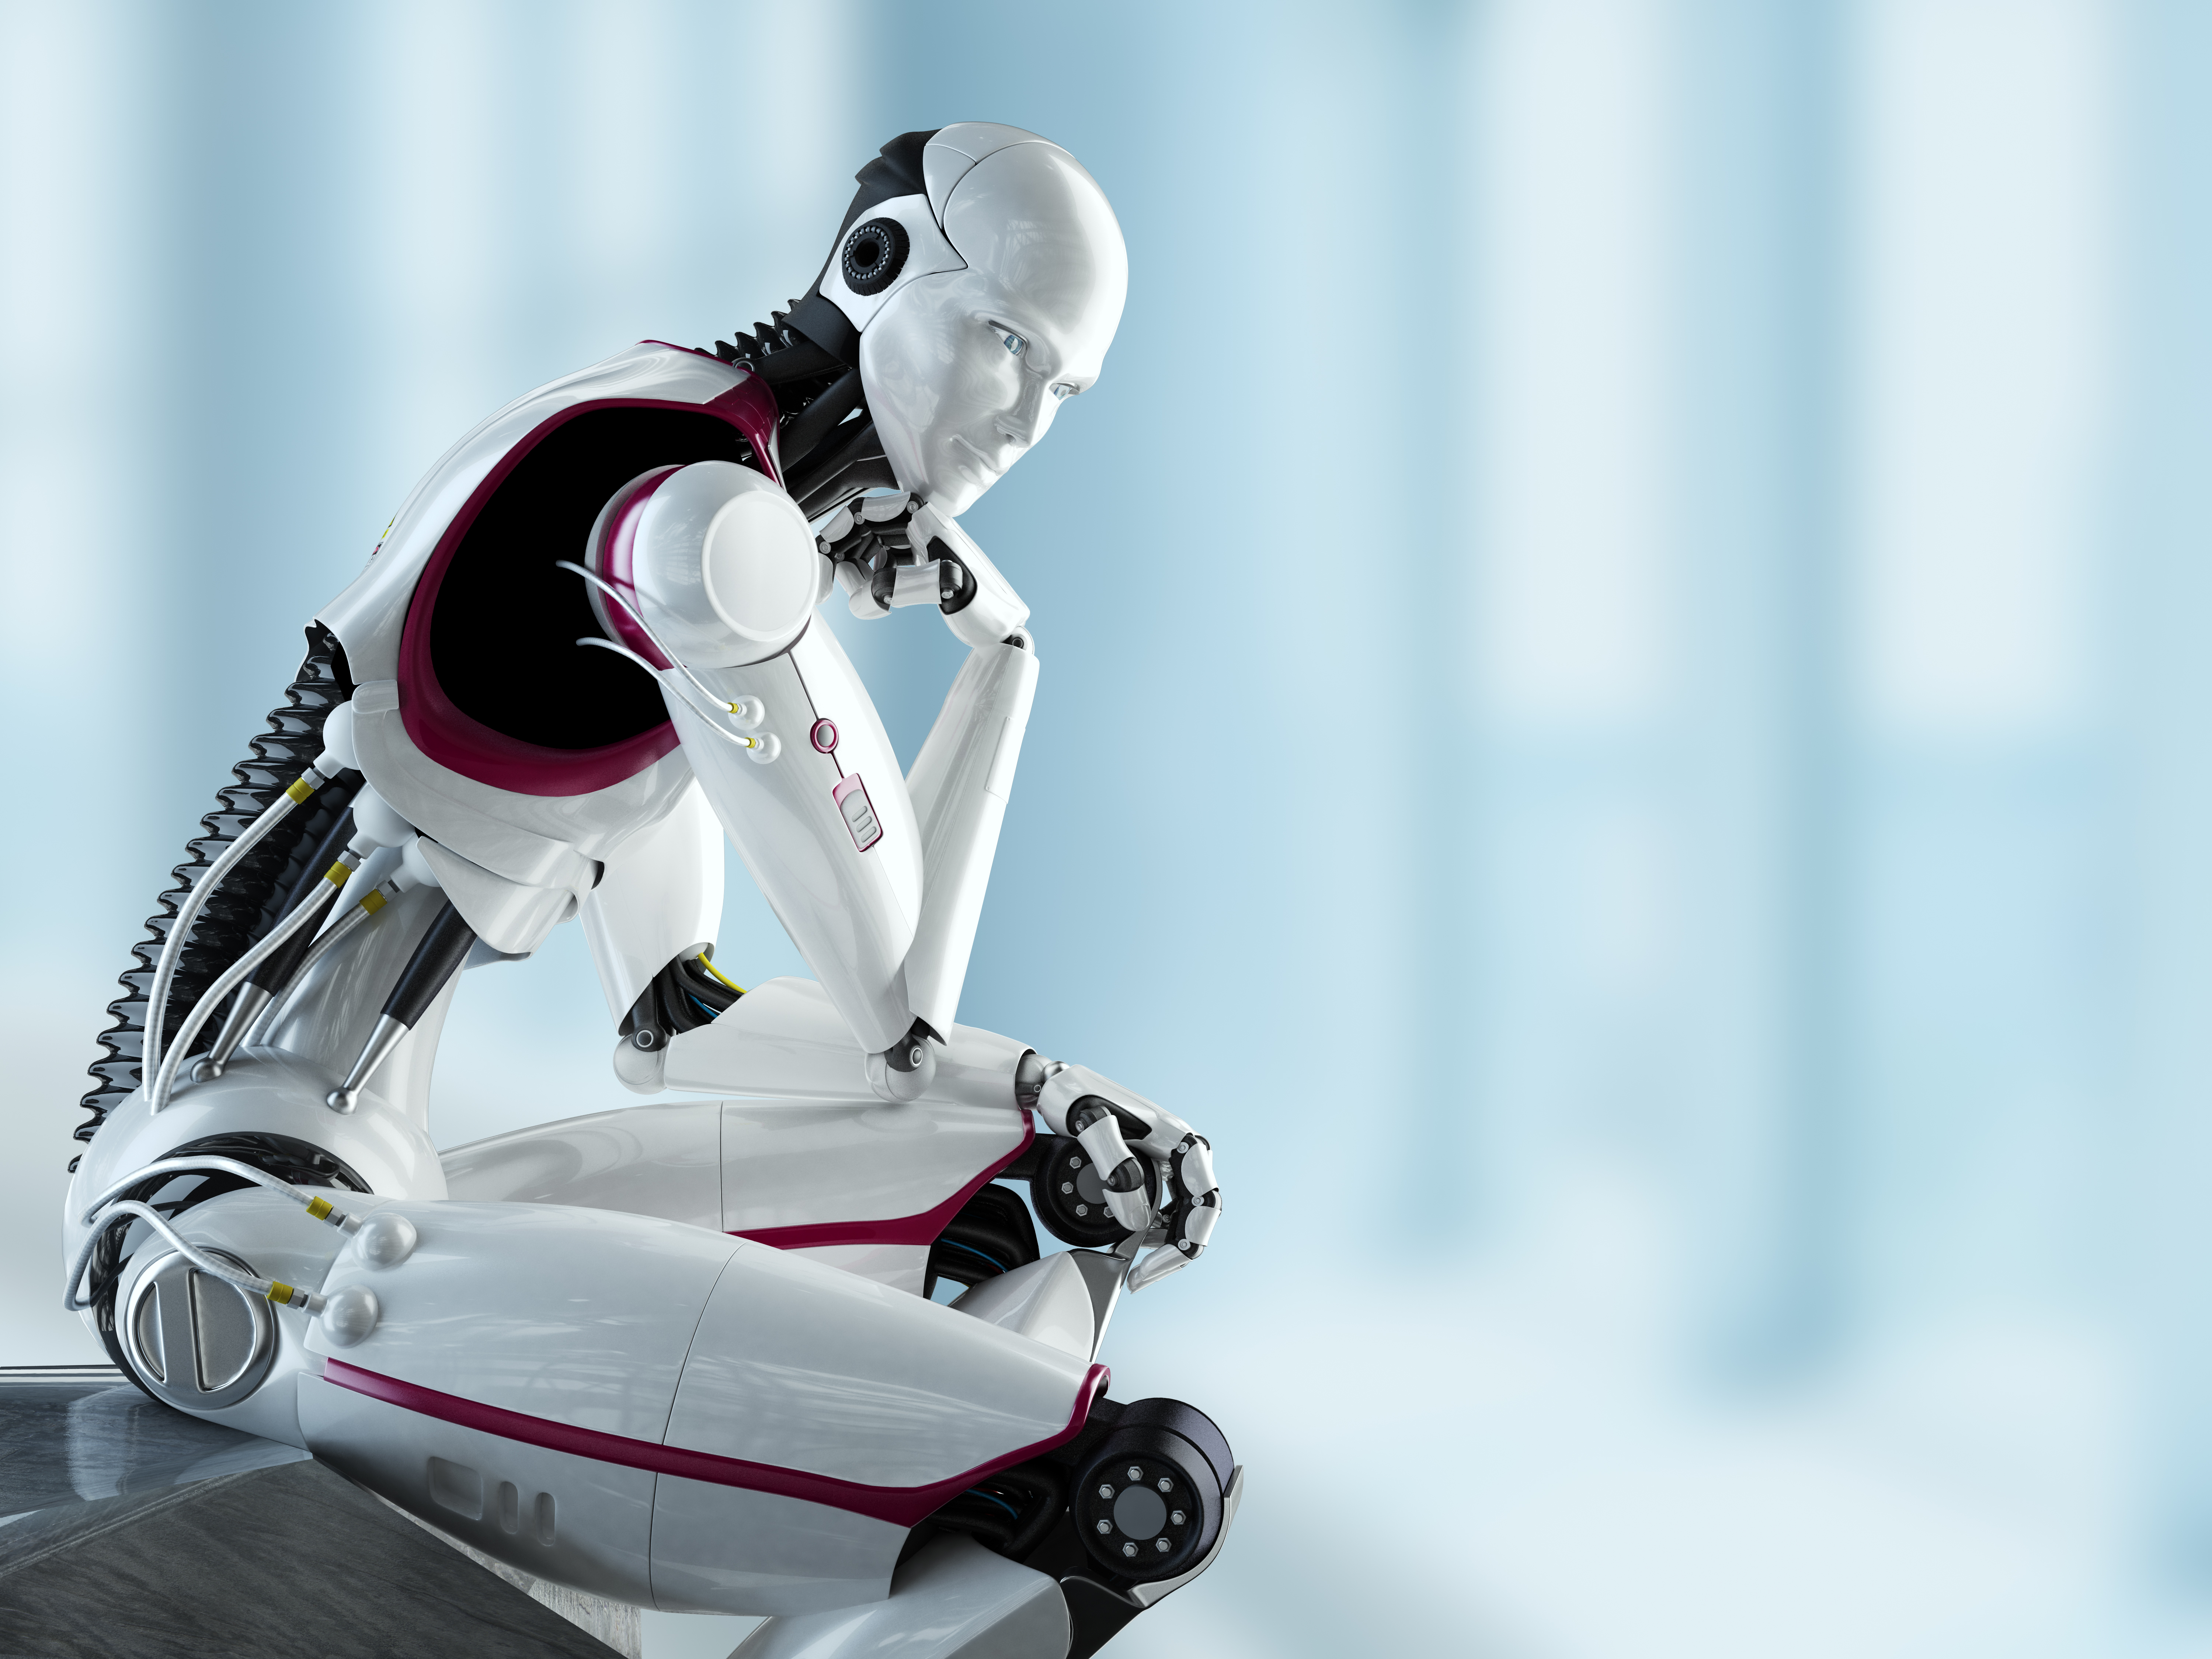 Les robots humanoïdes nécessitent plus de 20 axes moteurs pour reproduire les mouvements humains (Source : iStock_180737079)